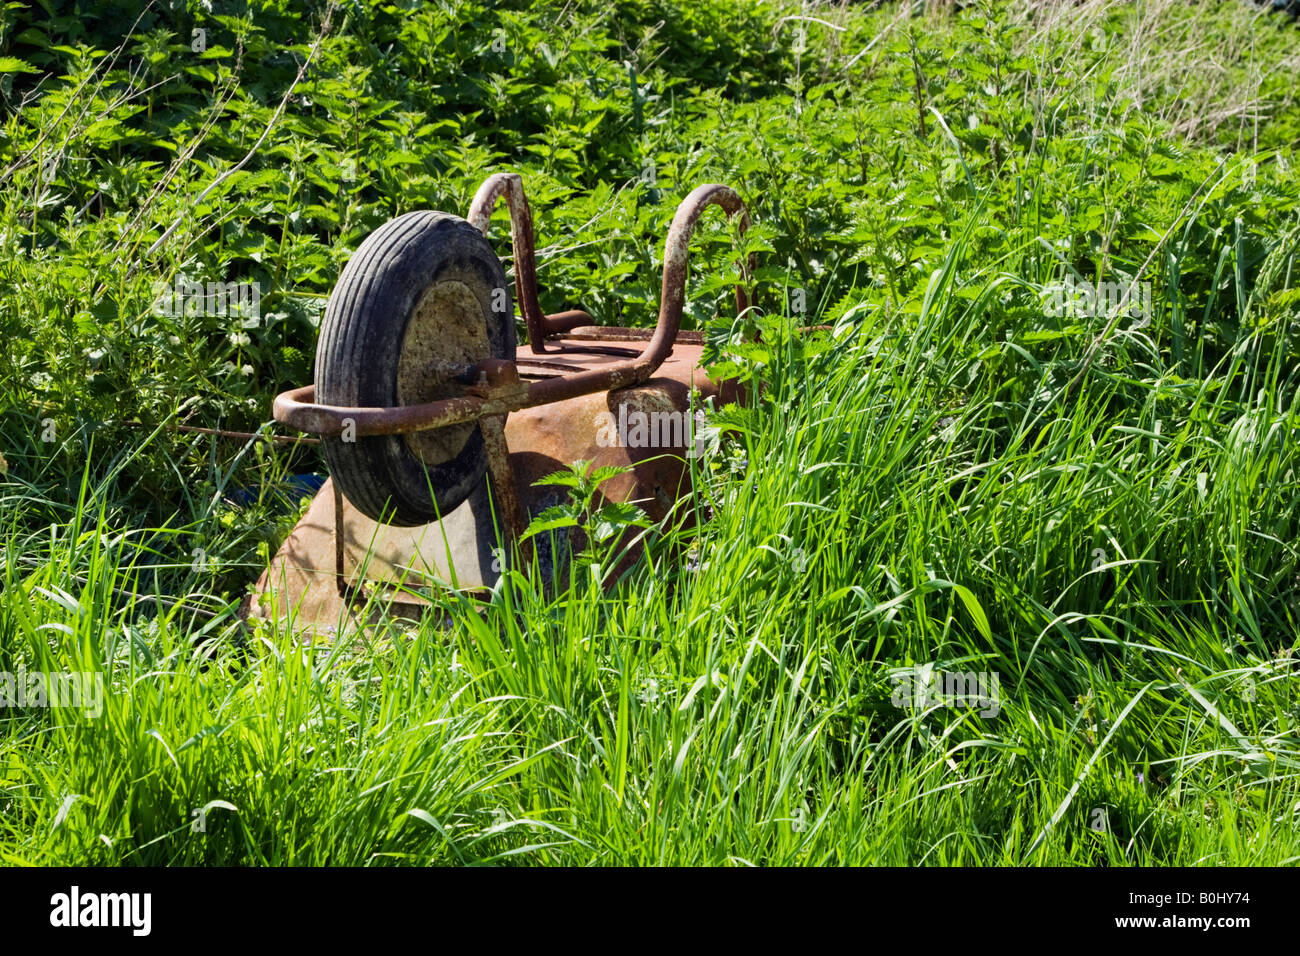 Old rusty wheelbarrow in overgrown garden Stock Photo